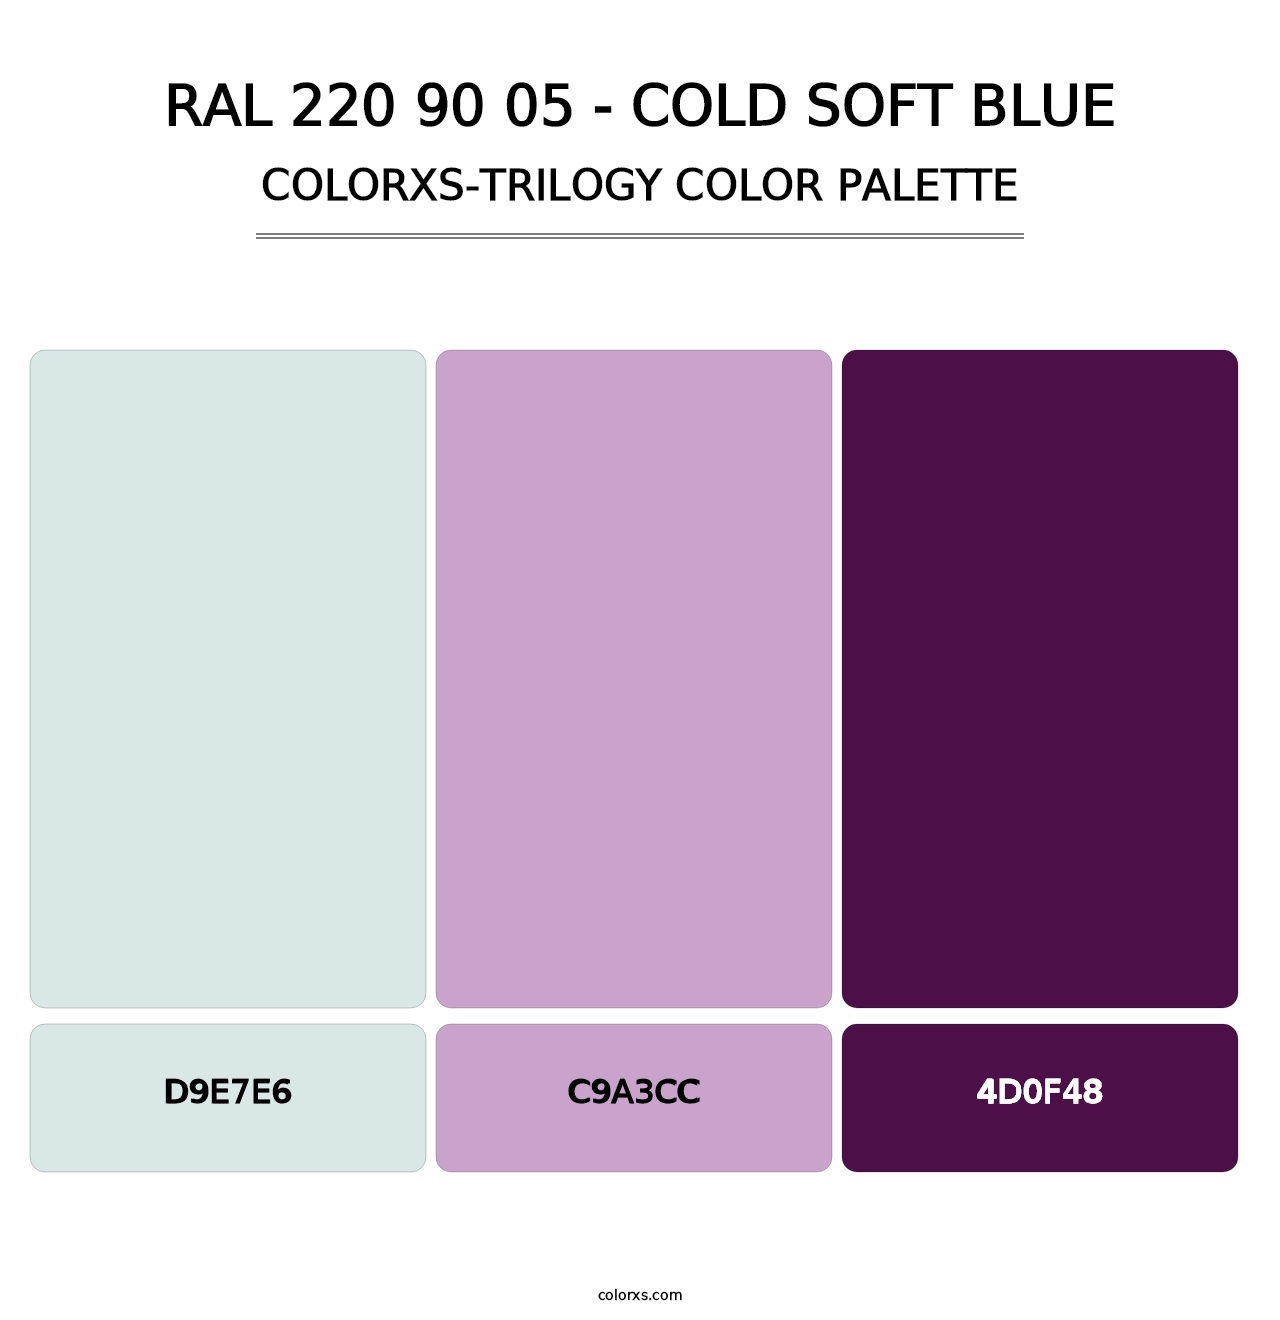 RAL 220 90 05 - Cold Soft Blue - Colorxs Trilogy Palette